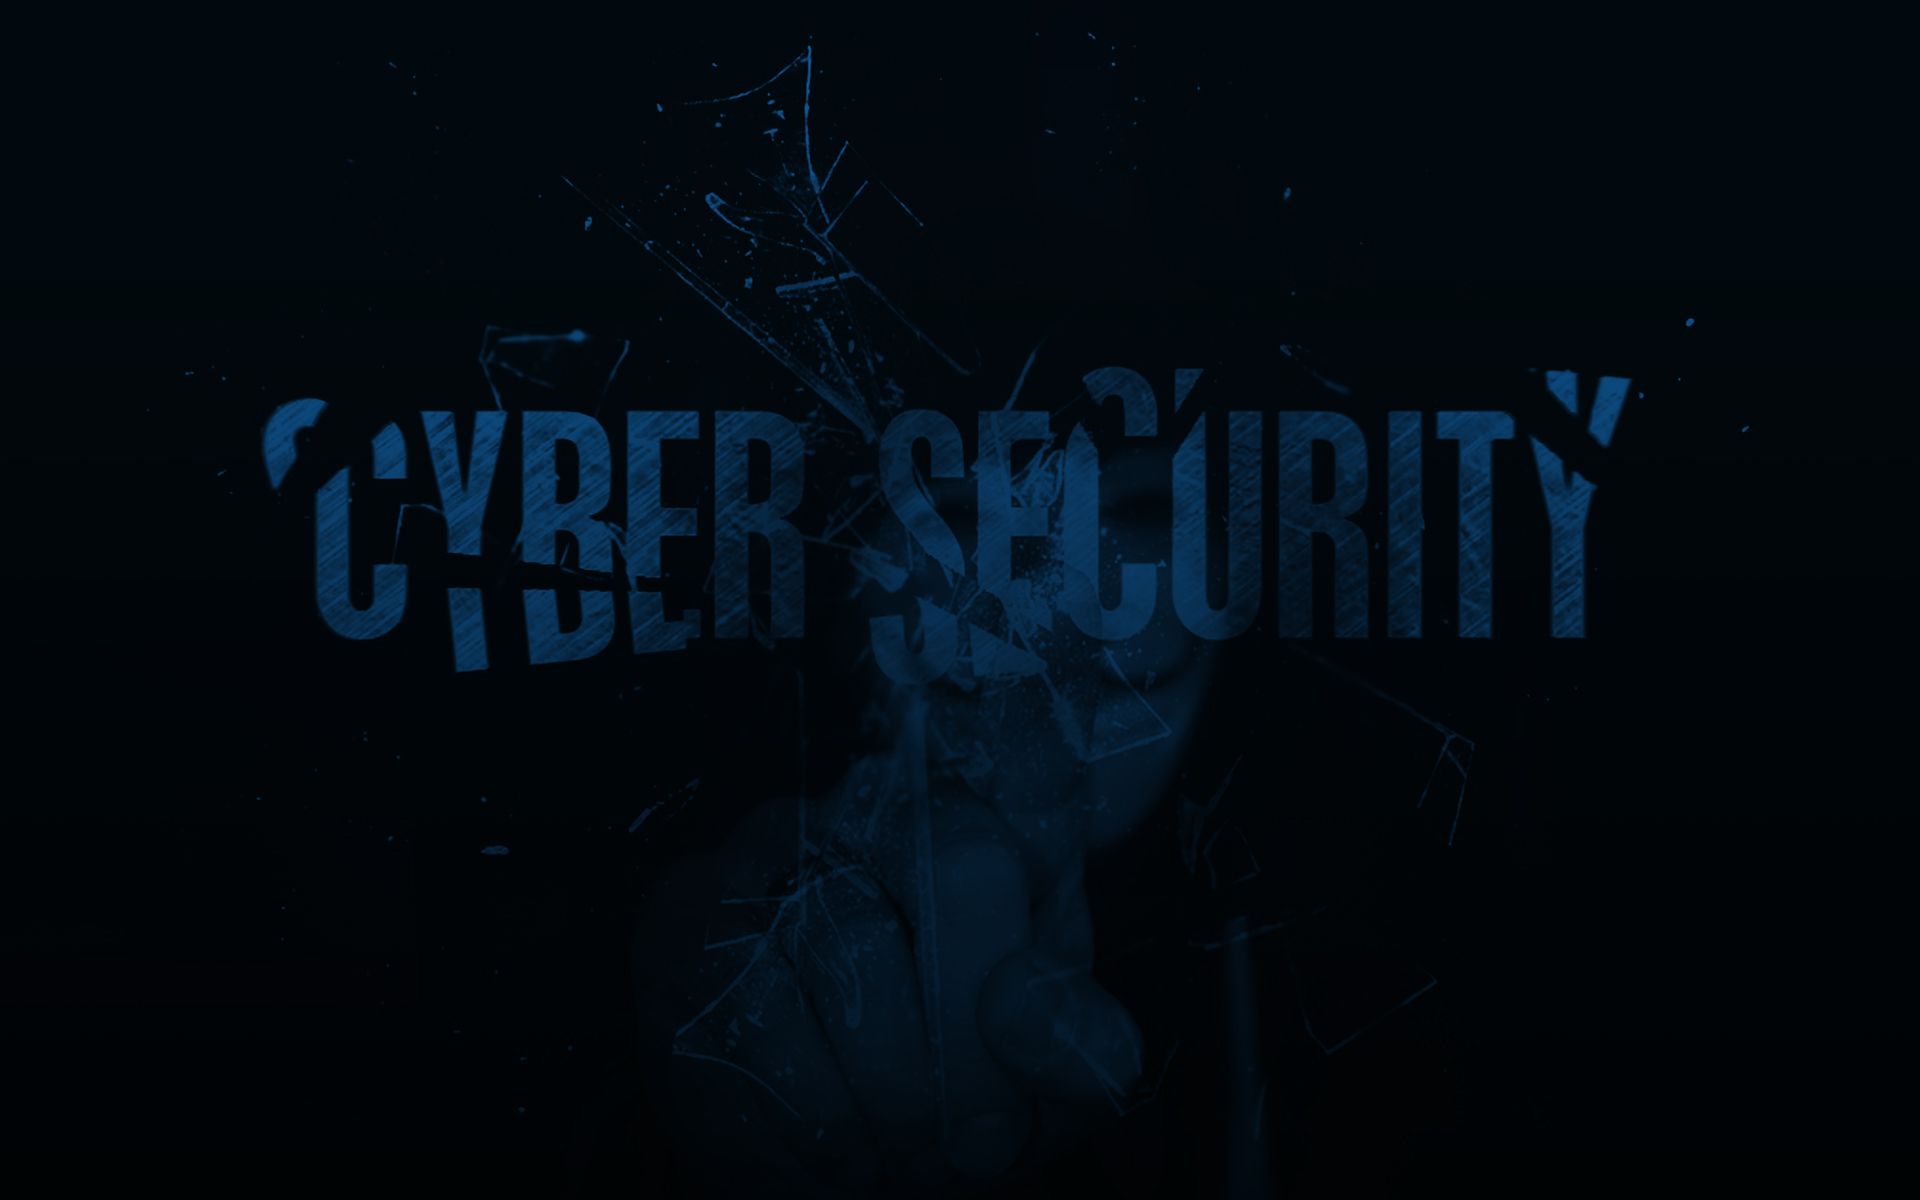 Cyberbezpieczeństwo - czyny zabronione przez polski system prawny